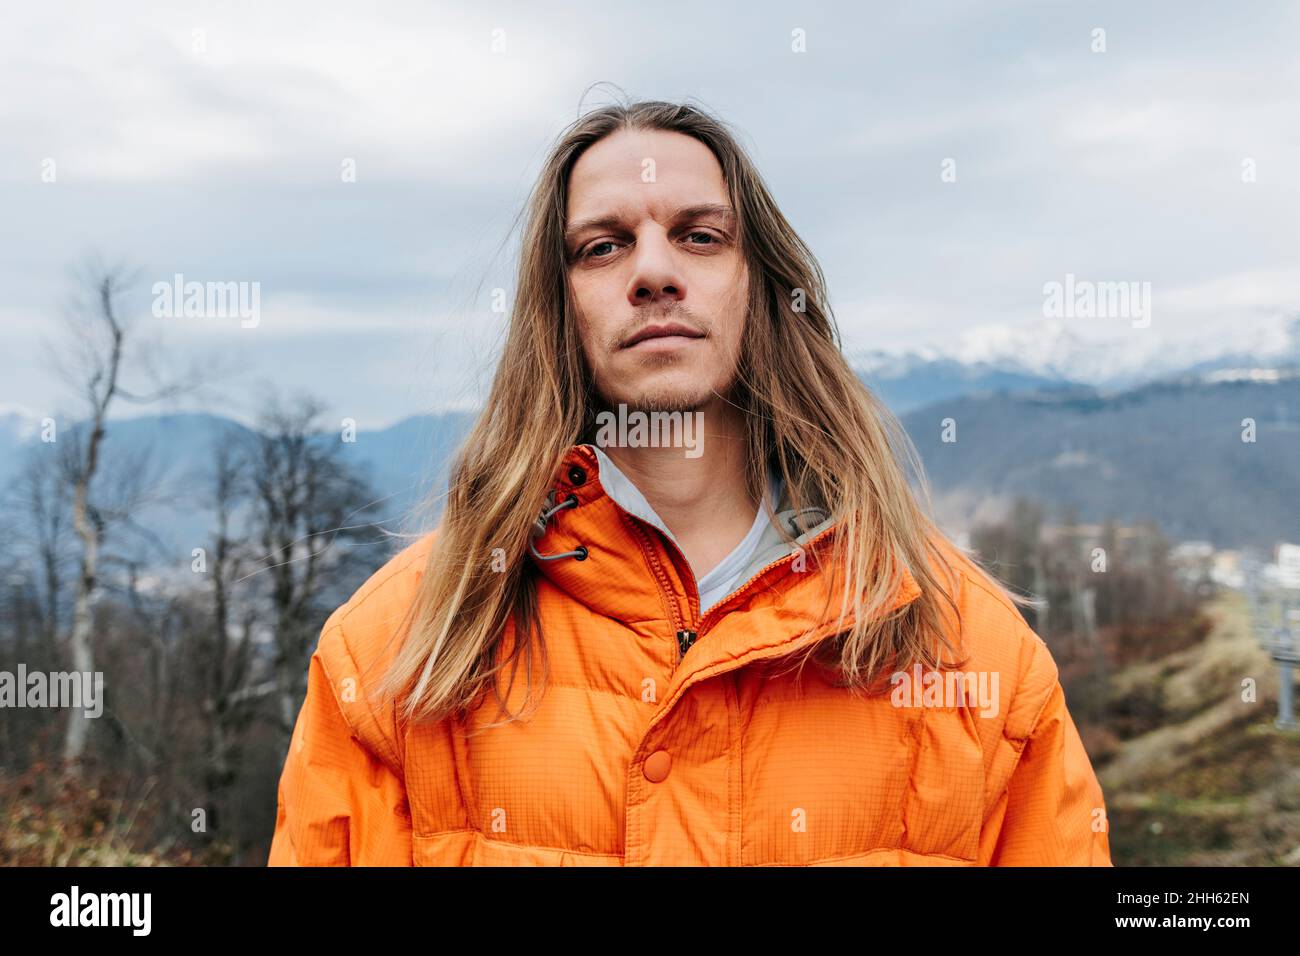 Man with blond long hair wearing orange jacket Stock Photo